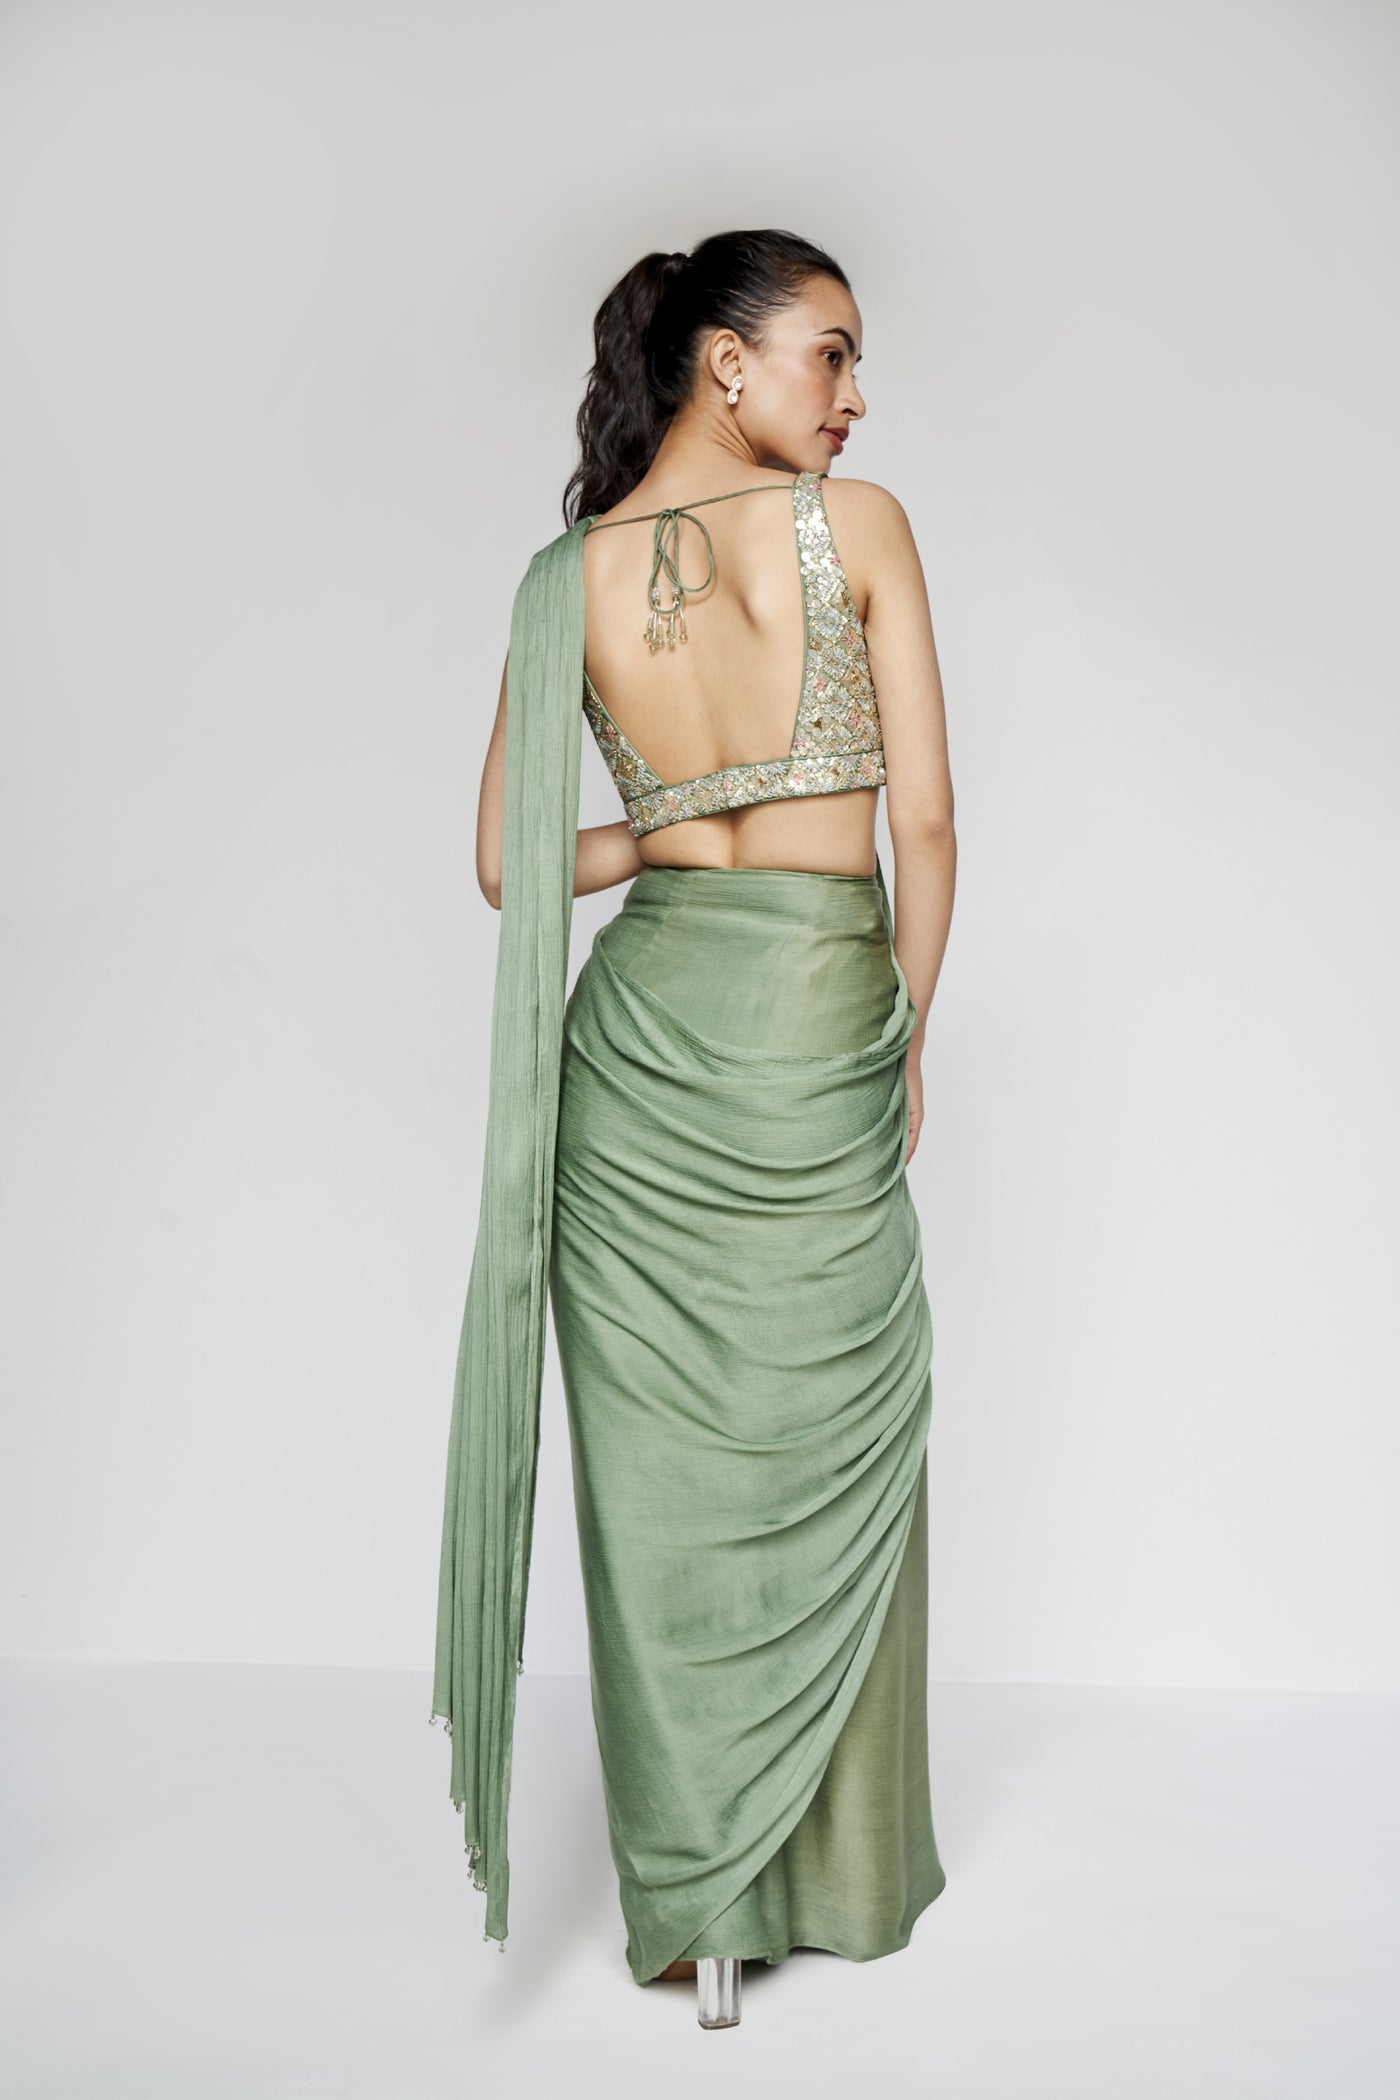 Anita Dongre Starling Saree Sage Green indian designer wear online shopping melange singapore